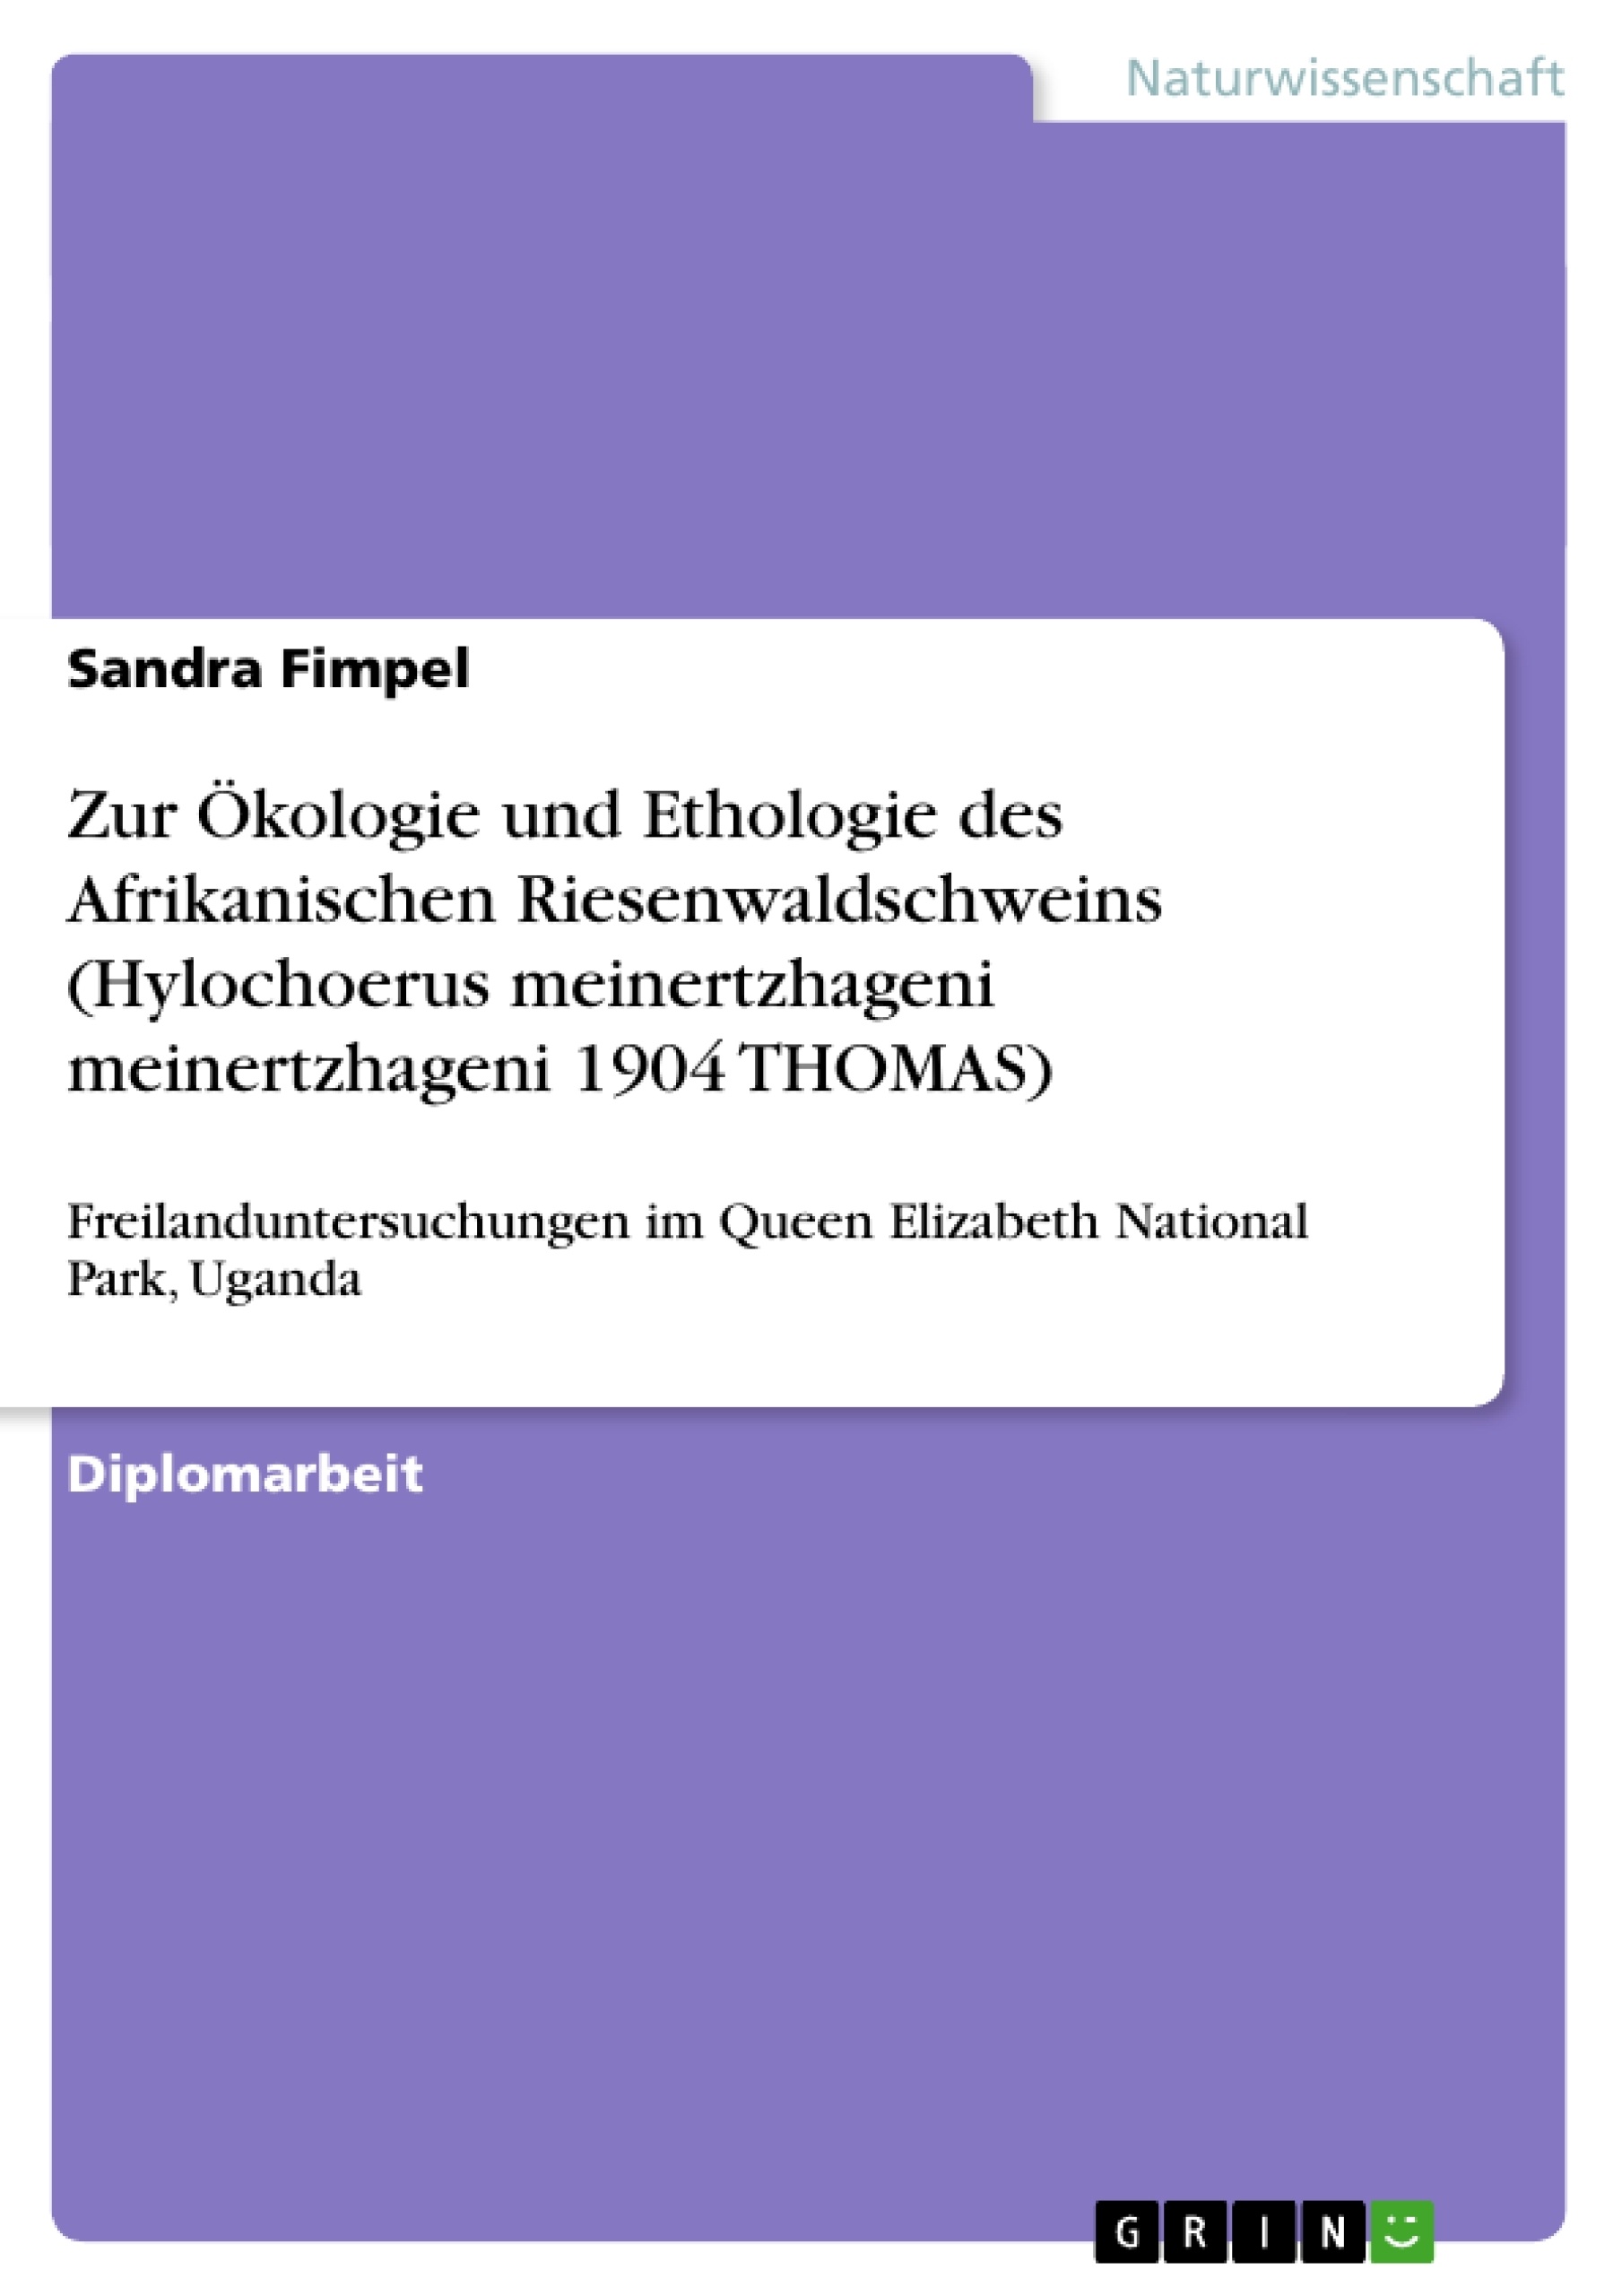 Titel: Zur Ökologie und Ethologie des Afrikanischen Riesenwaldschweins (Hylochoerus meinertzhageni meinertzhageni 1904 THOMAS)